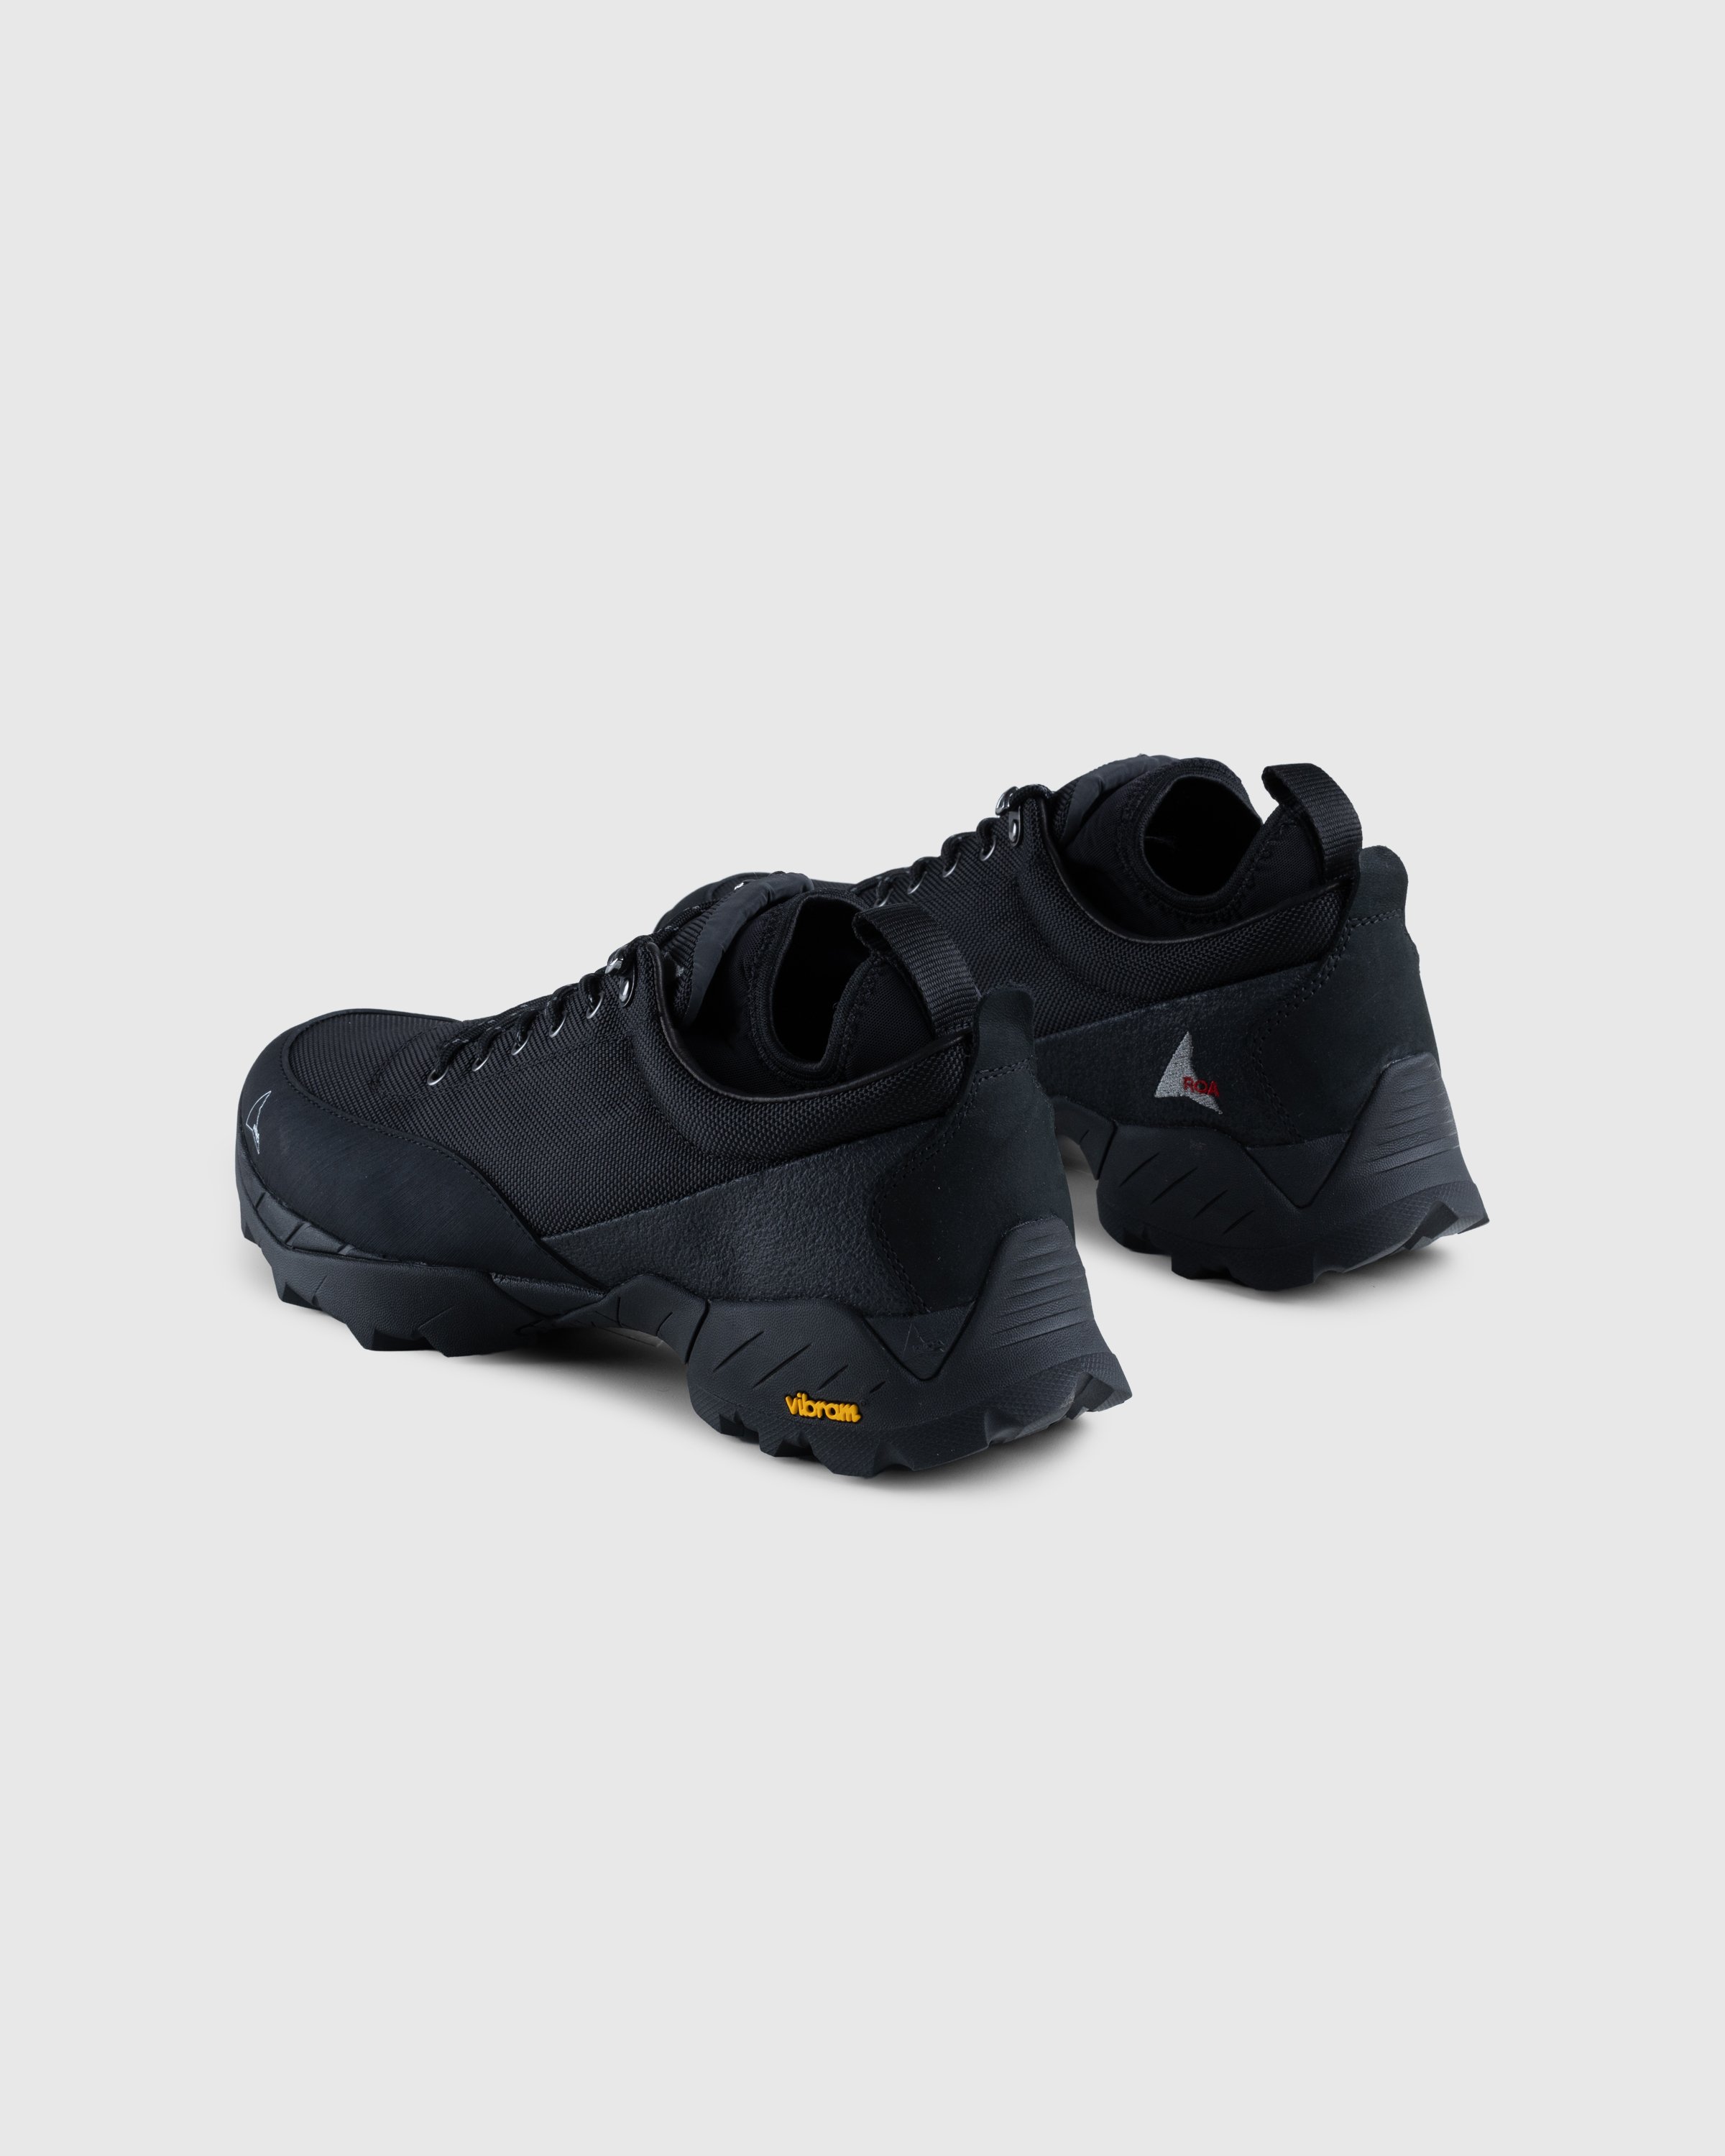 ROA - Neal Sneakers Black - Footwear - Black - Image 4